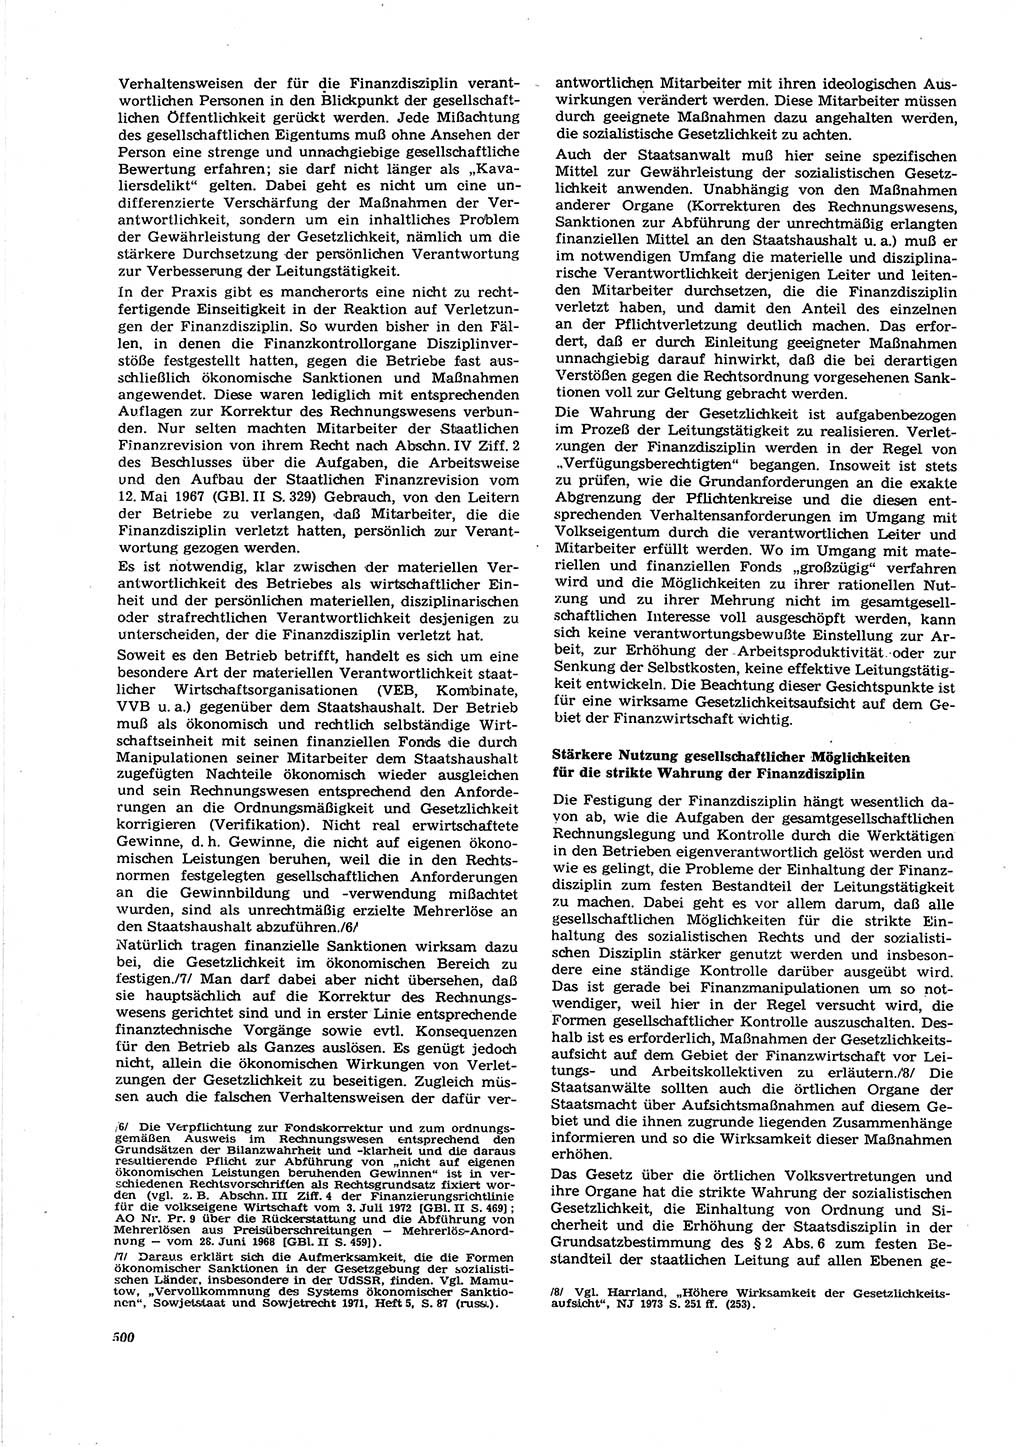 Neue Justiz (NJ), Zeitschrift für Recht und Rechtswissenschaft [Deutsche Demokratische Republik (DDR)], 27. Jahrgang 1973, Seite 500 (NJ DDR 1973, S. 500)